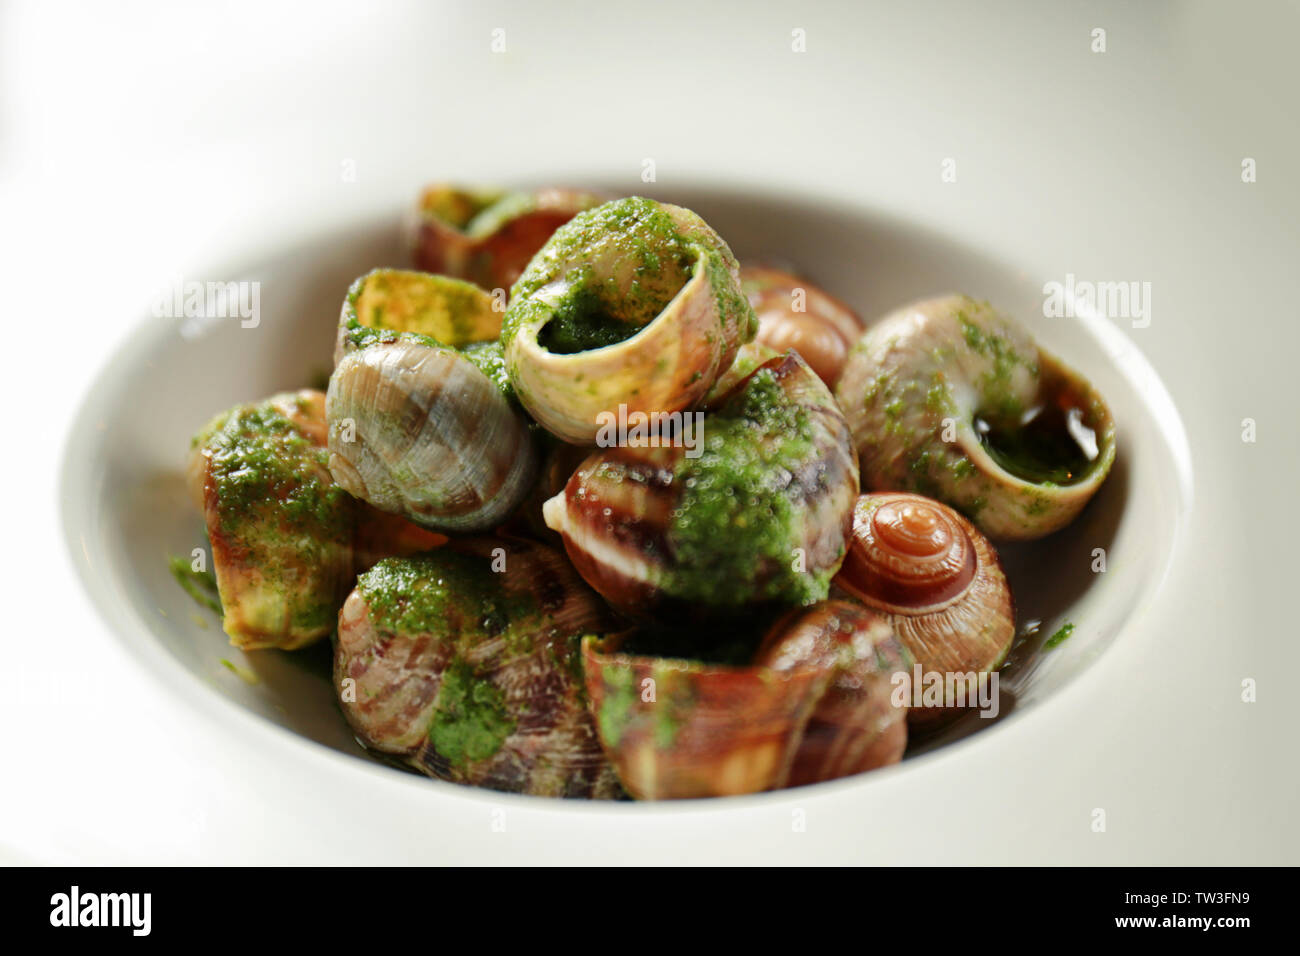 Plaque avec de délicieux escargots à la sauce verte, gros plan Photo Stock  - Alamy